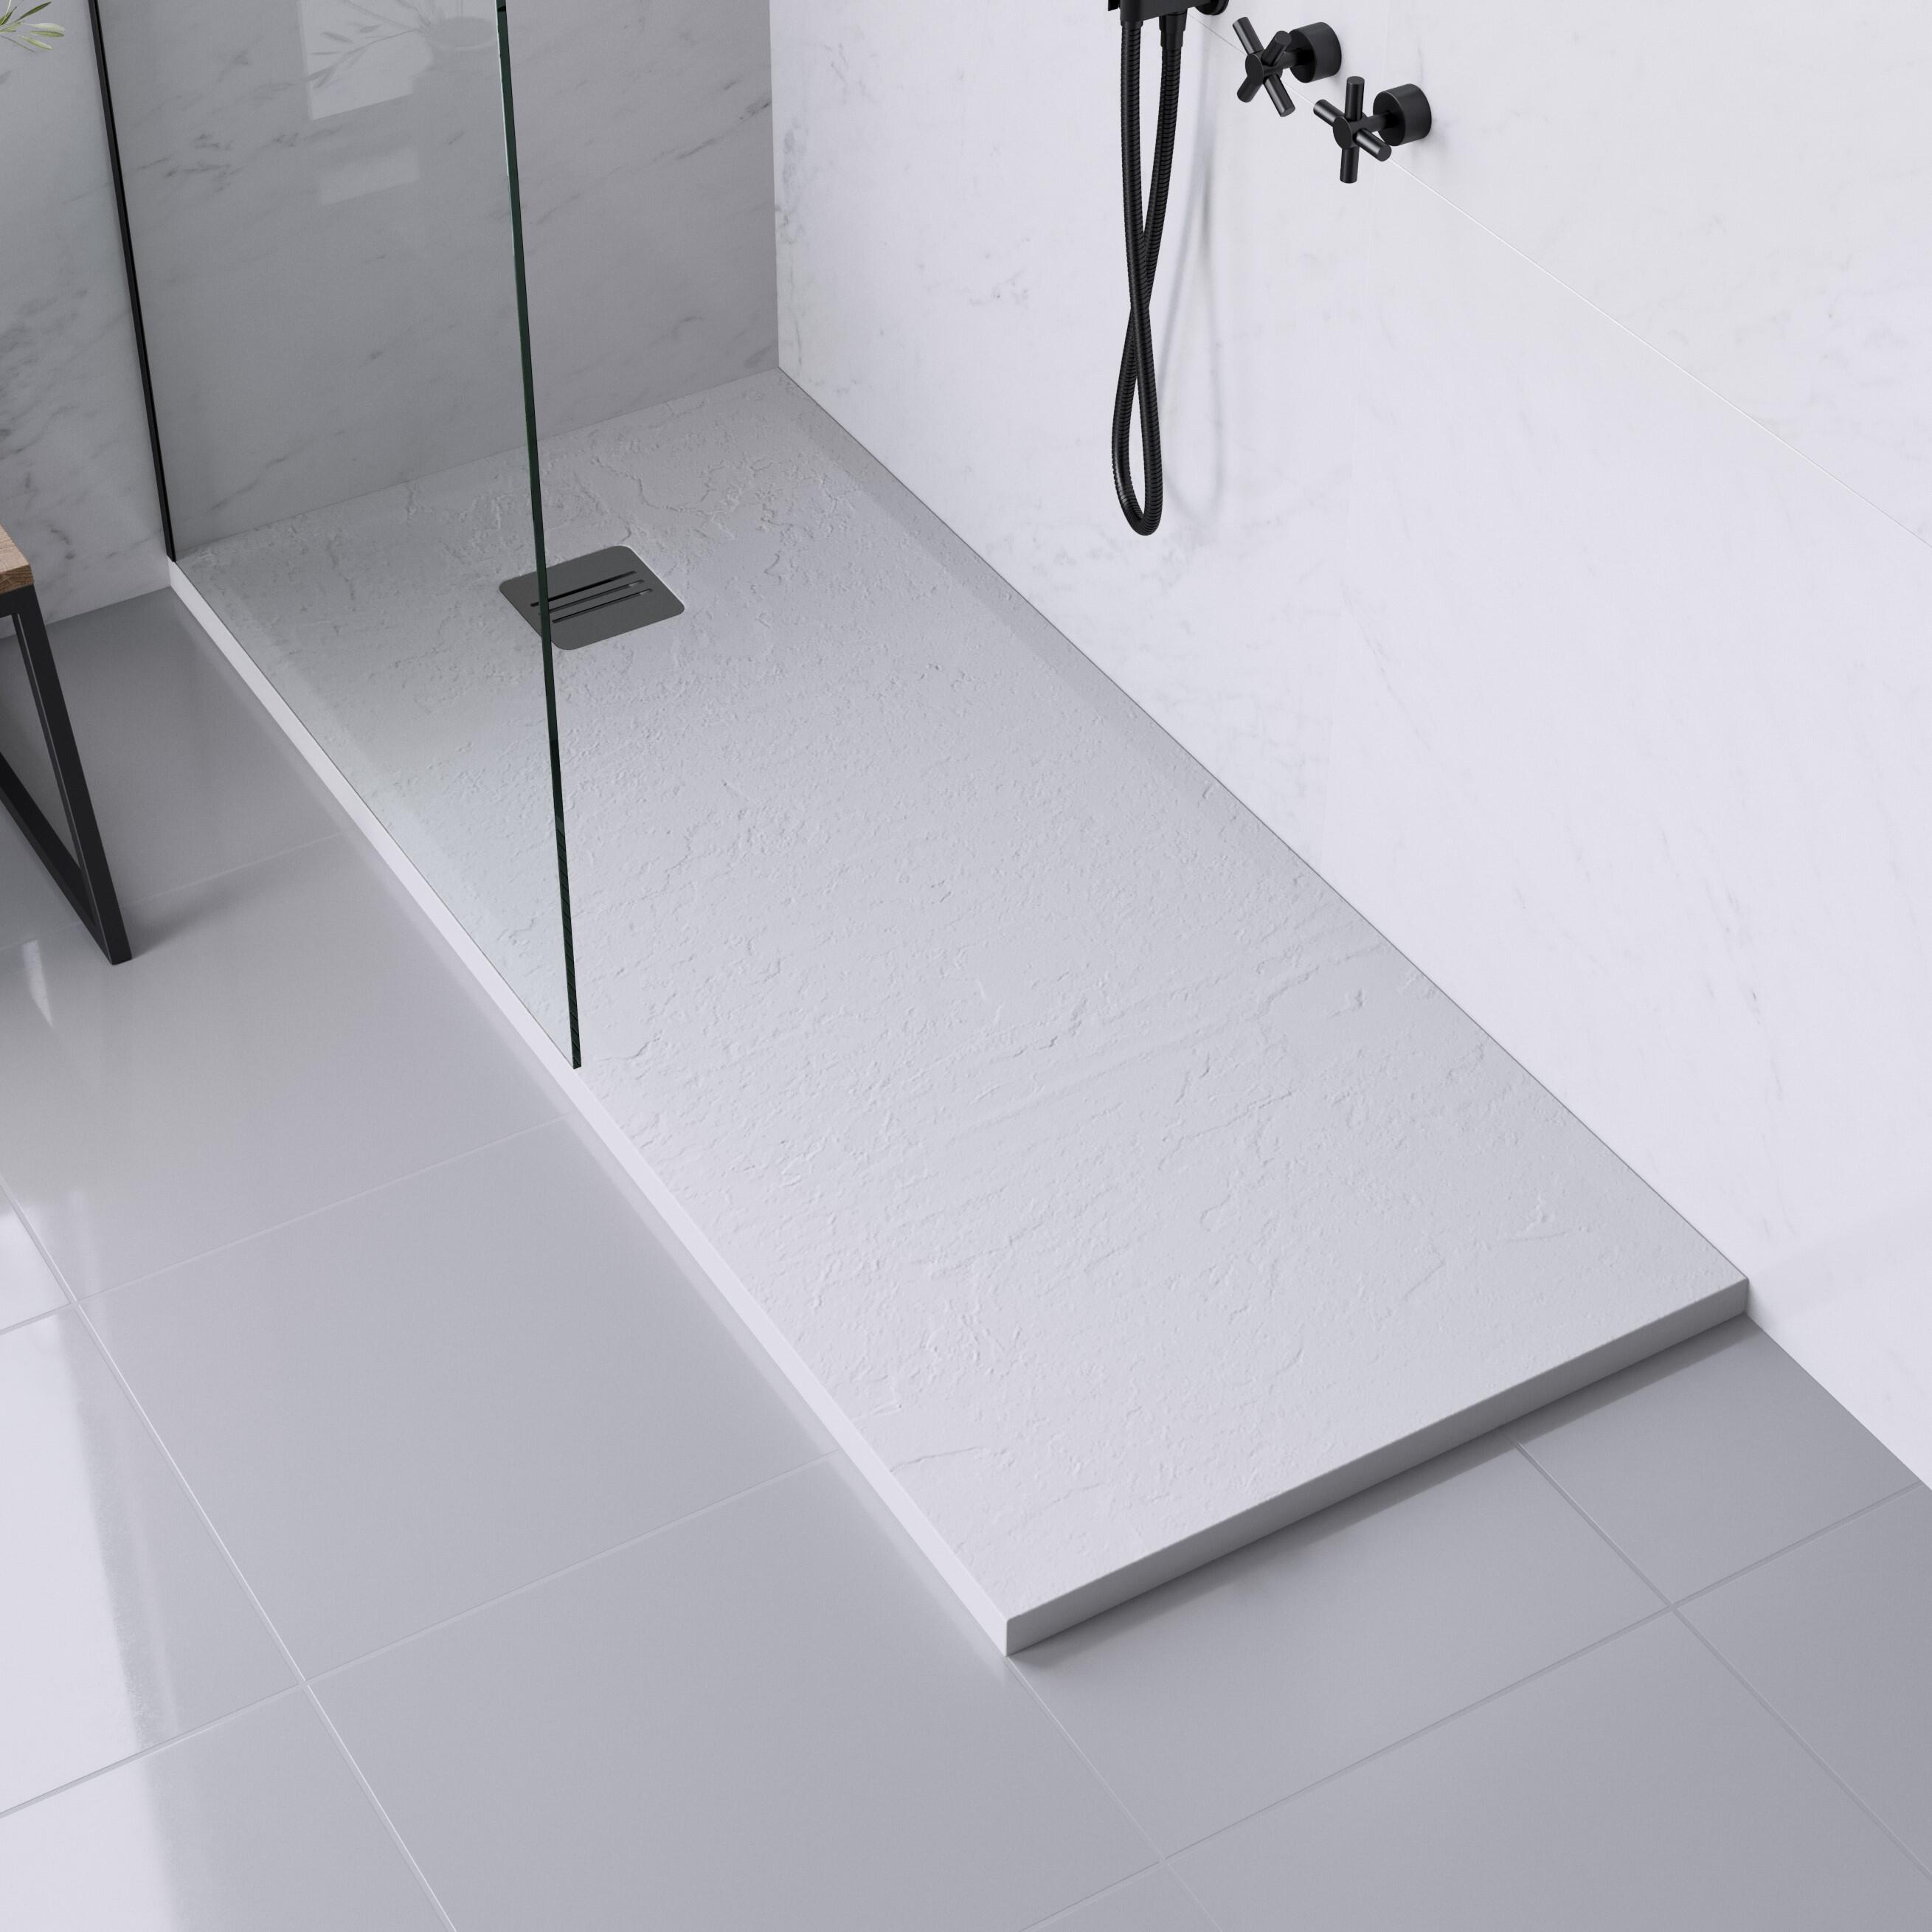 Piatto doccia ultrasottile resina sintetica e polvere di marmo Remix 70 x 170 cm bianco - 2